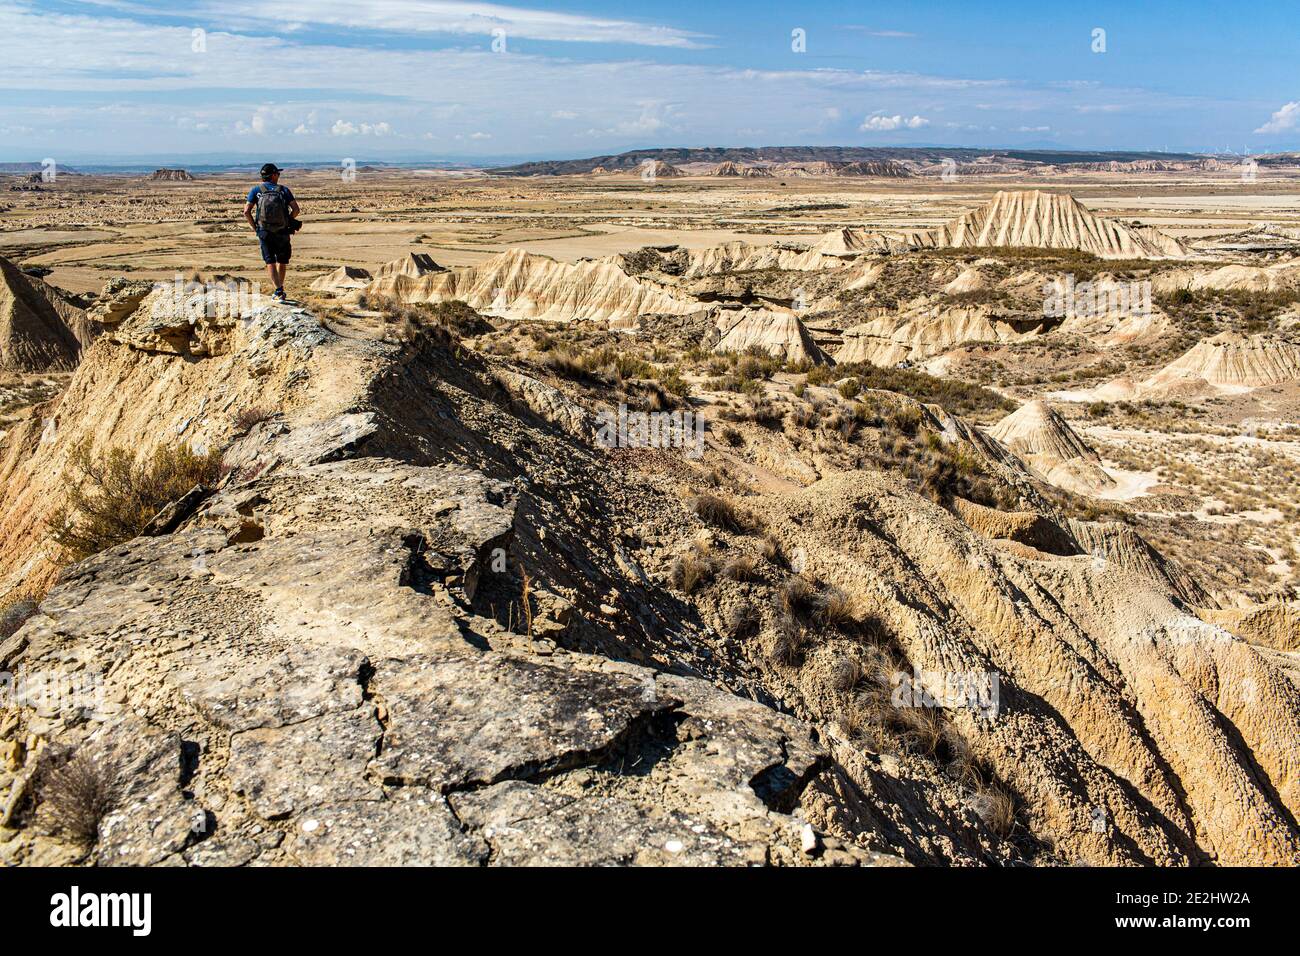 España: Paisaje, región natural semi-desértica de las Bardenas reales, Navarra. Hombre mirando el paisaje marcado por la erosión. Foto de stock